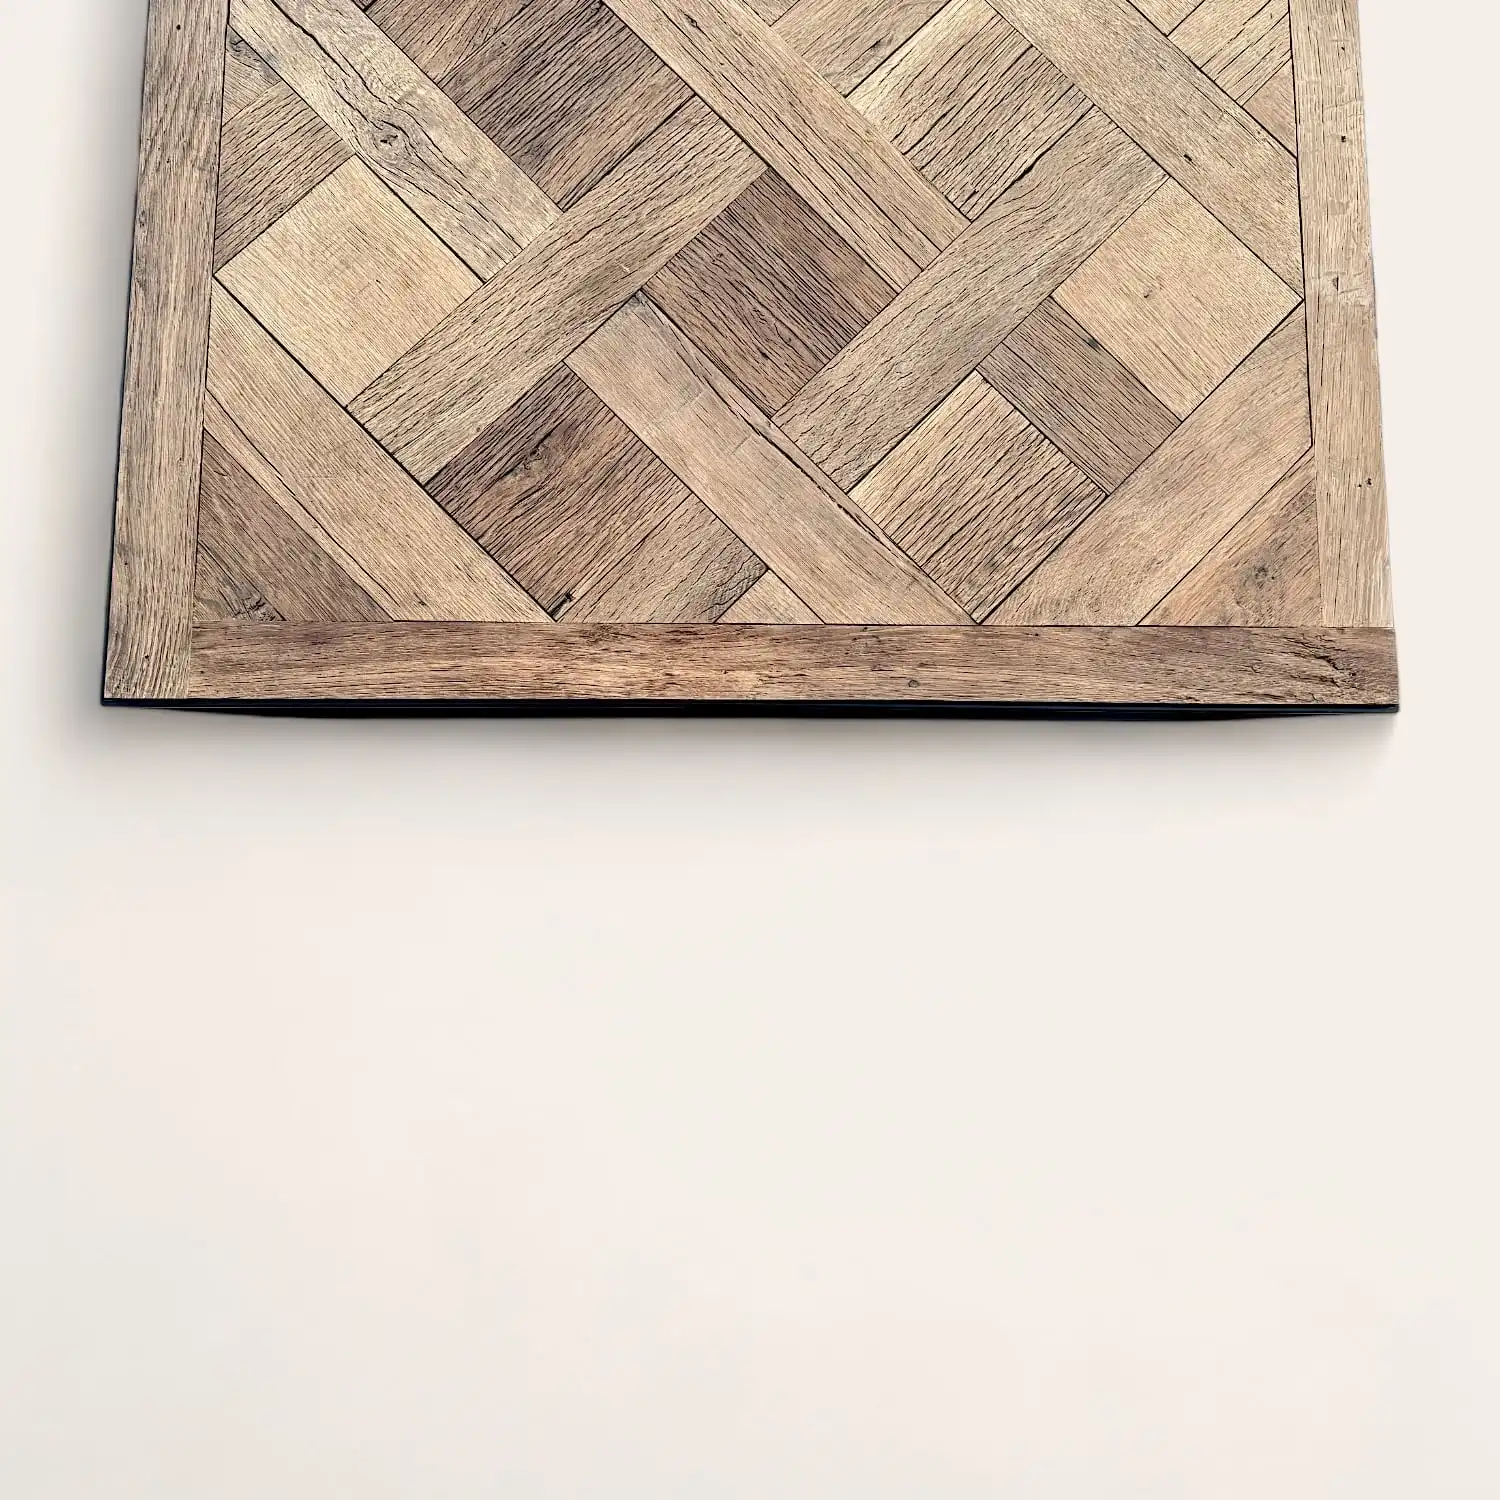  Une planche de bois ancien avec un motif versailles dessus. 